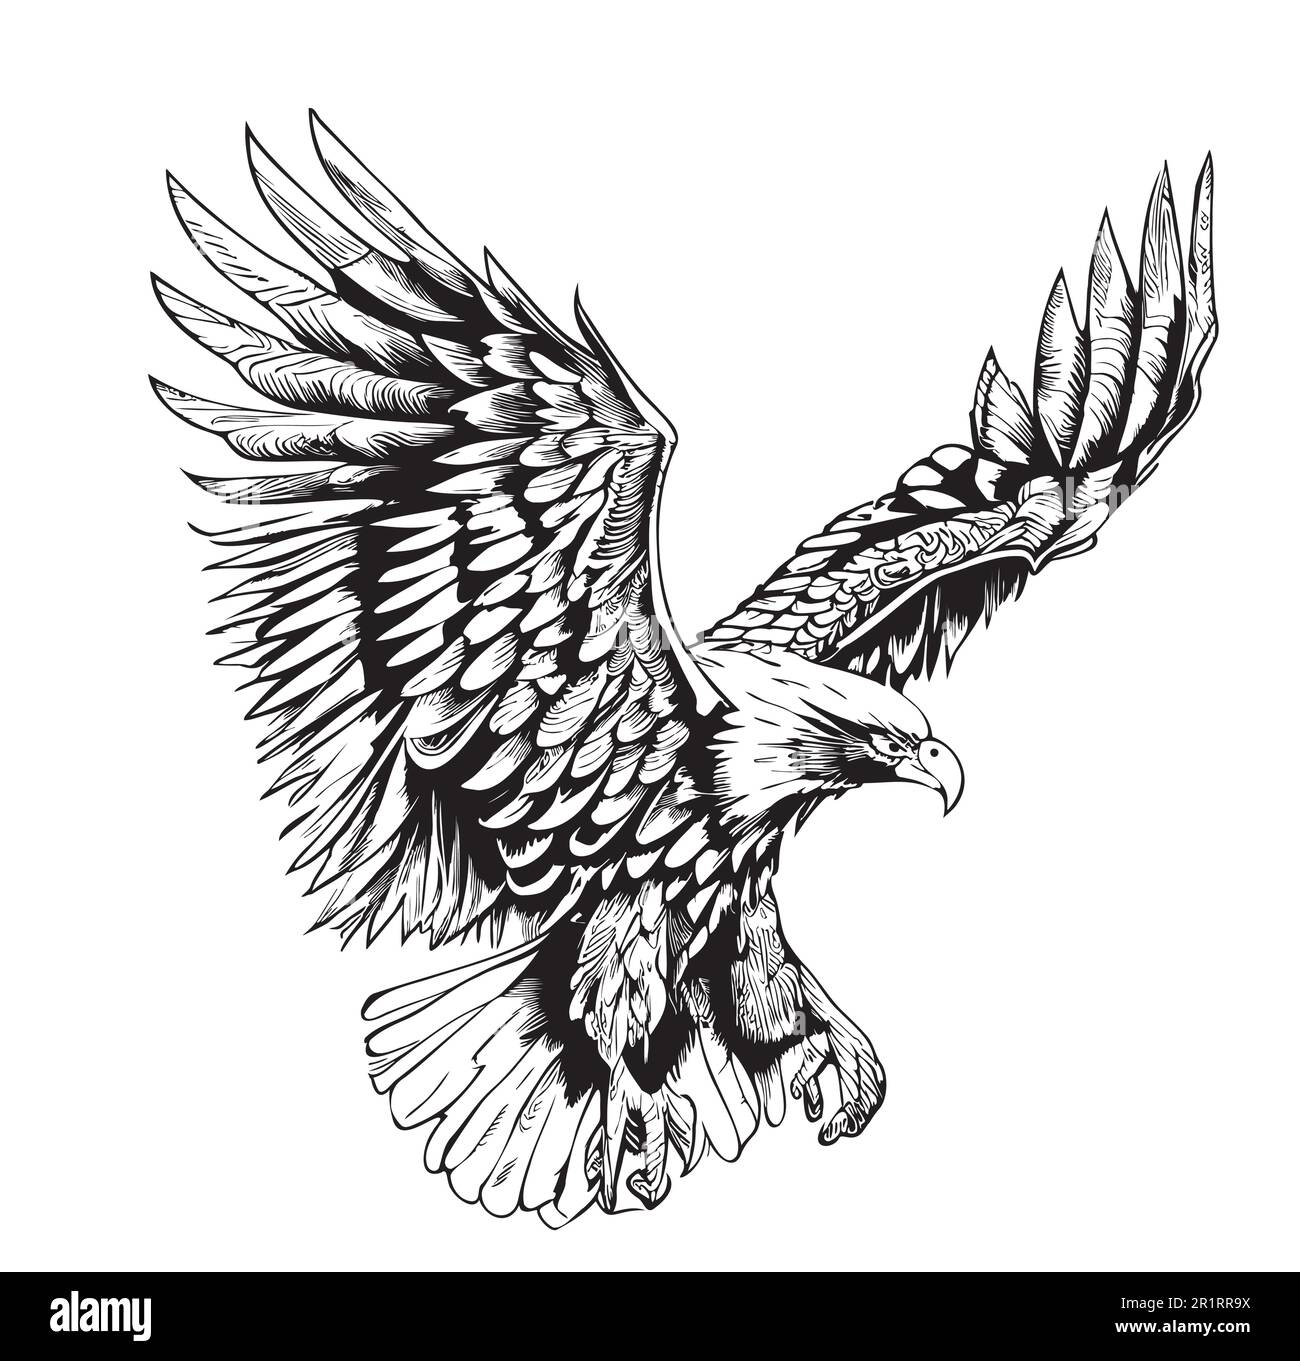 Disegno Eagle Flying disegnato a mano in un'illustrazione di stile doodle Illustrazione Vettoriale